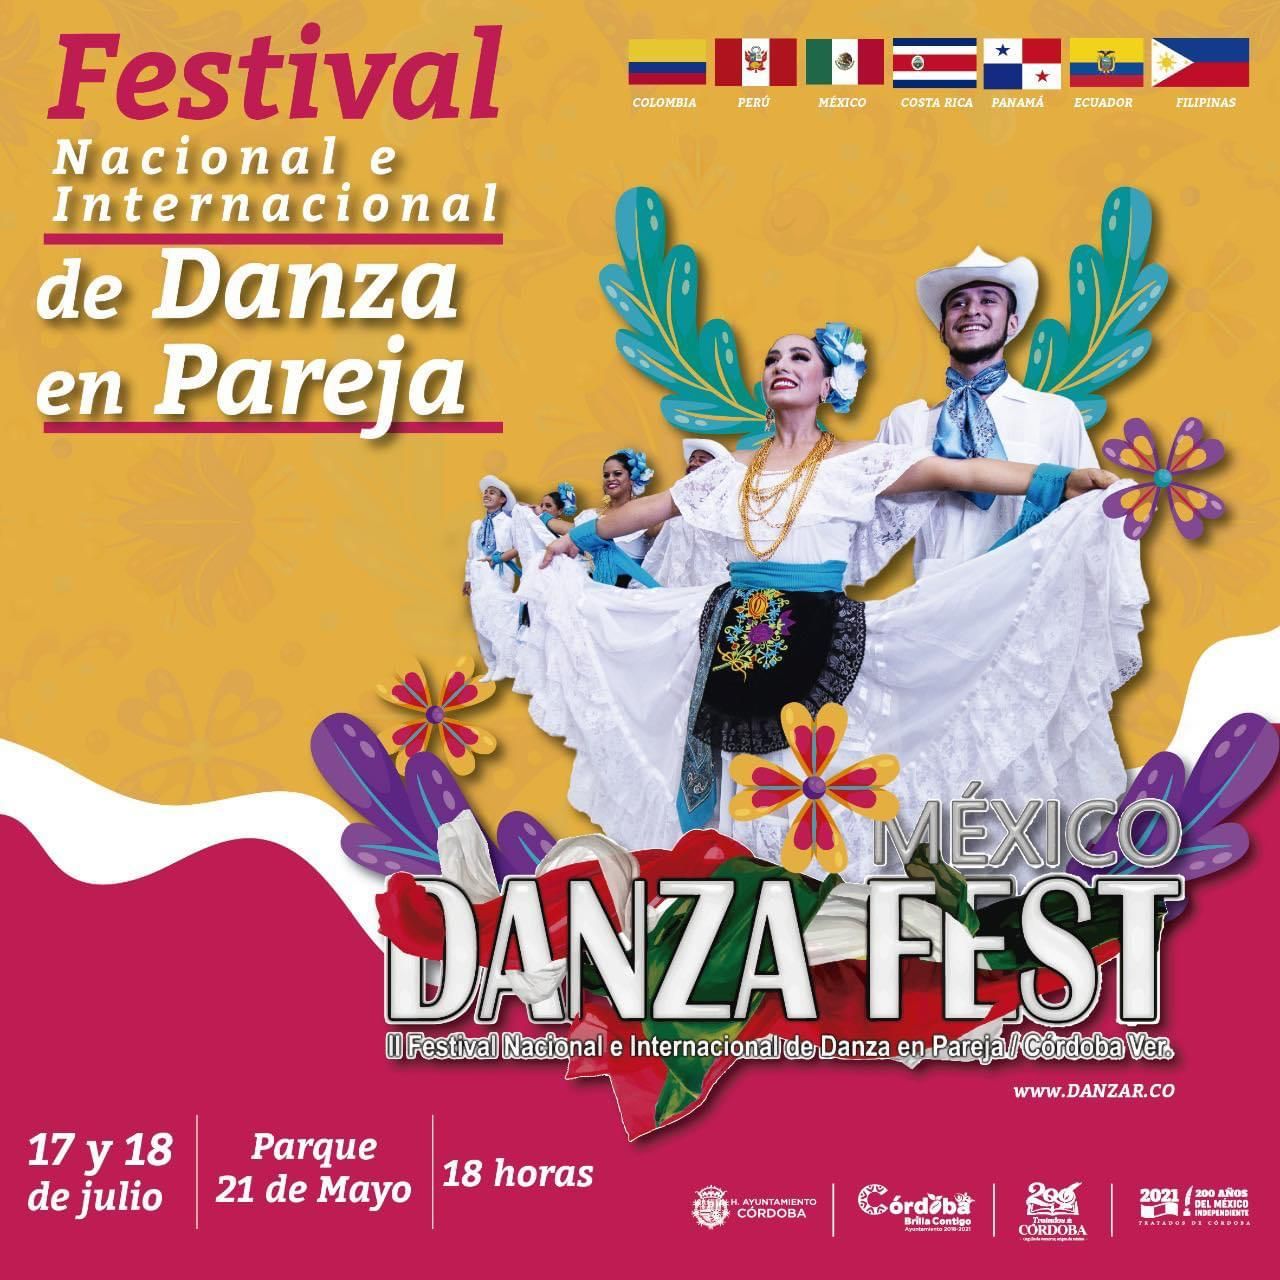 Córdoba sede de DanzaFest Festival Nacional e Internacional de Danza en Pareja 2021 